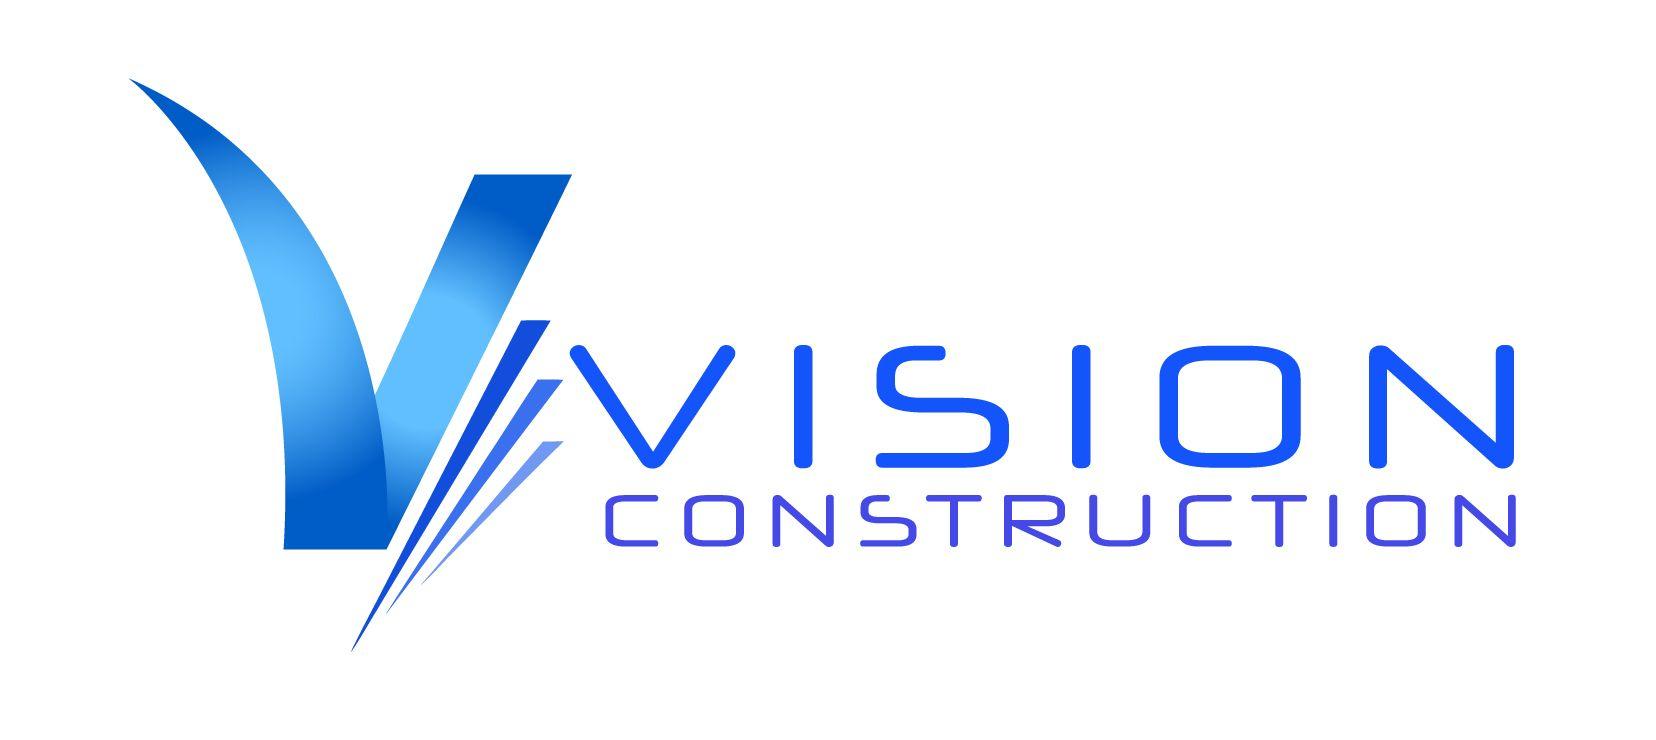 Vc Logo - VC Logo 01 Design Dallas